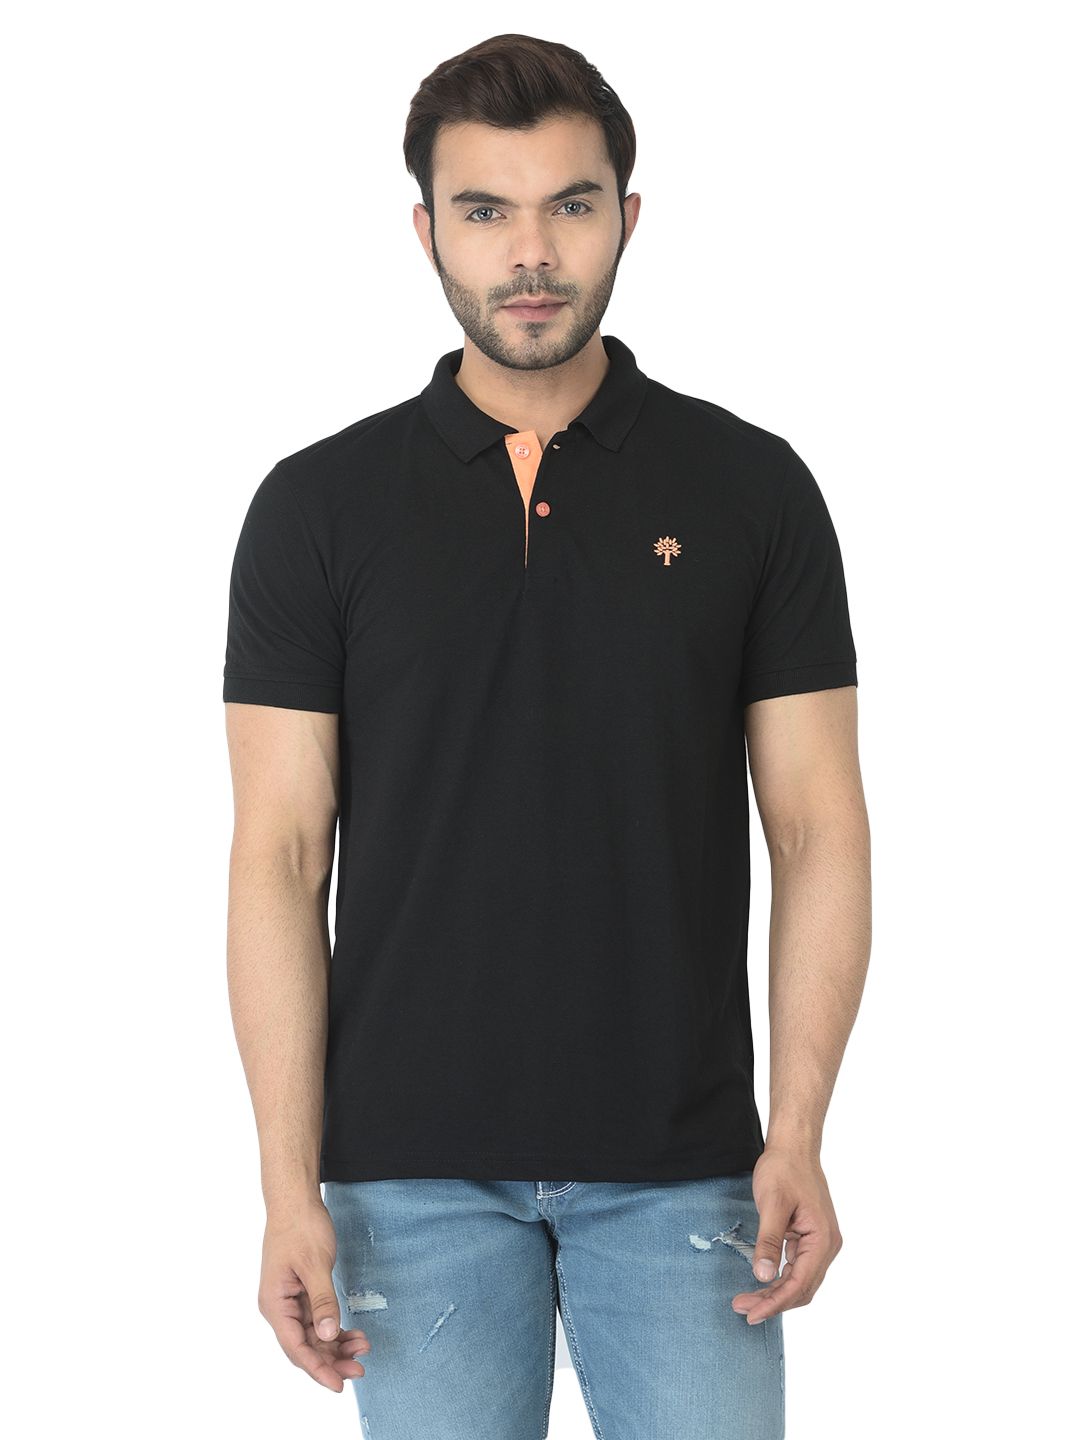 Black Polo T-shirt for men